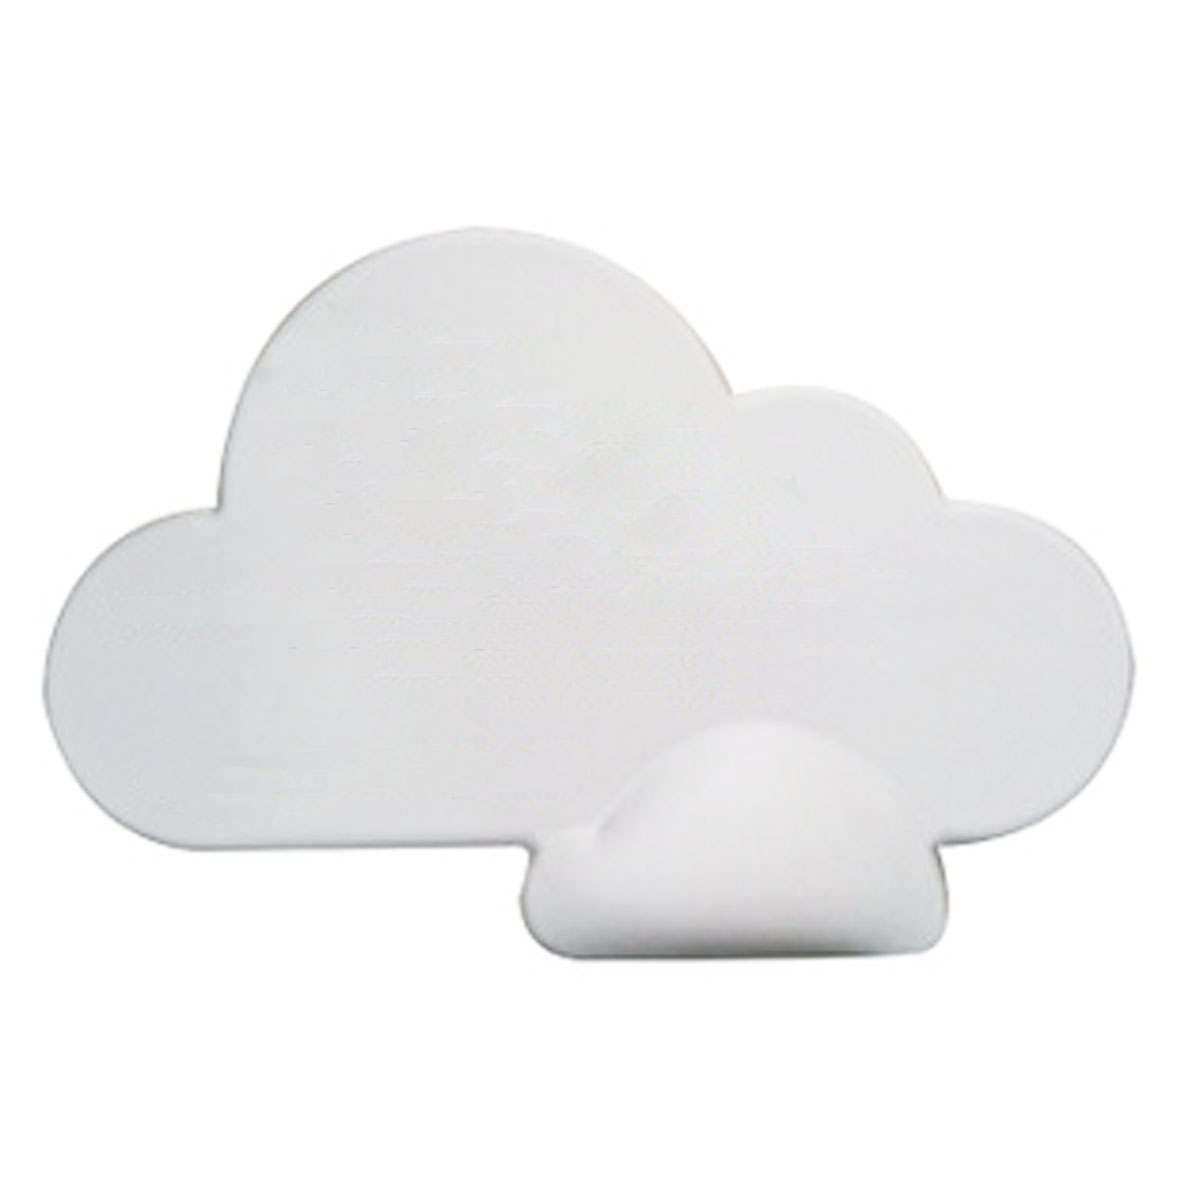 GL-AKL0104 Cloud Shape Mouse Pad